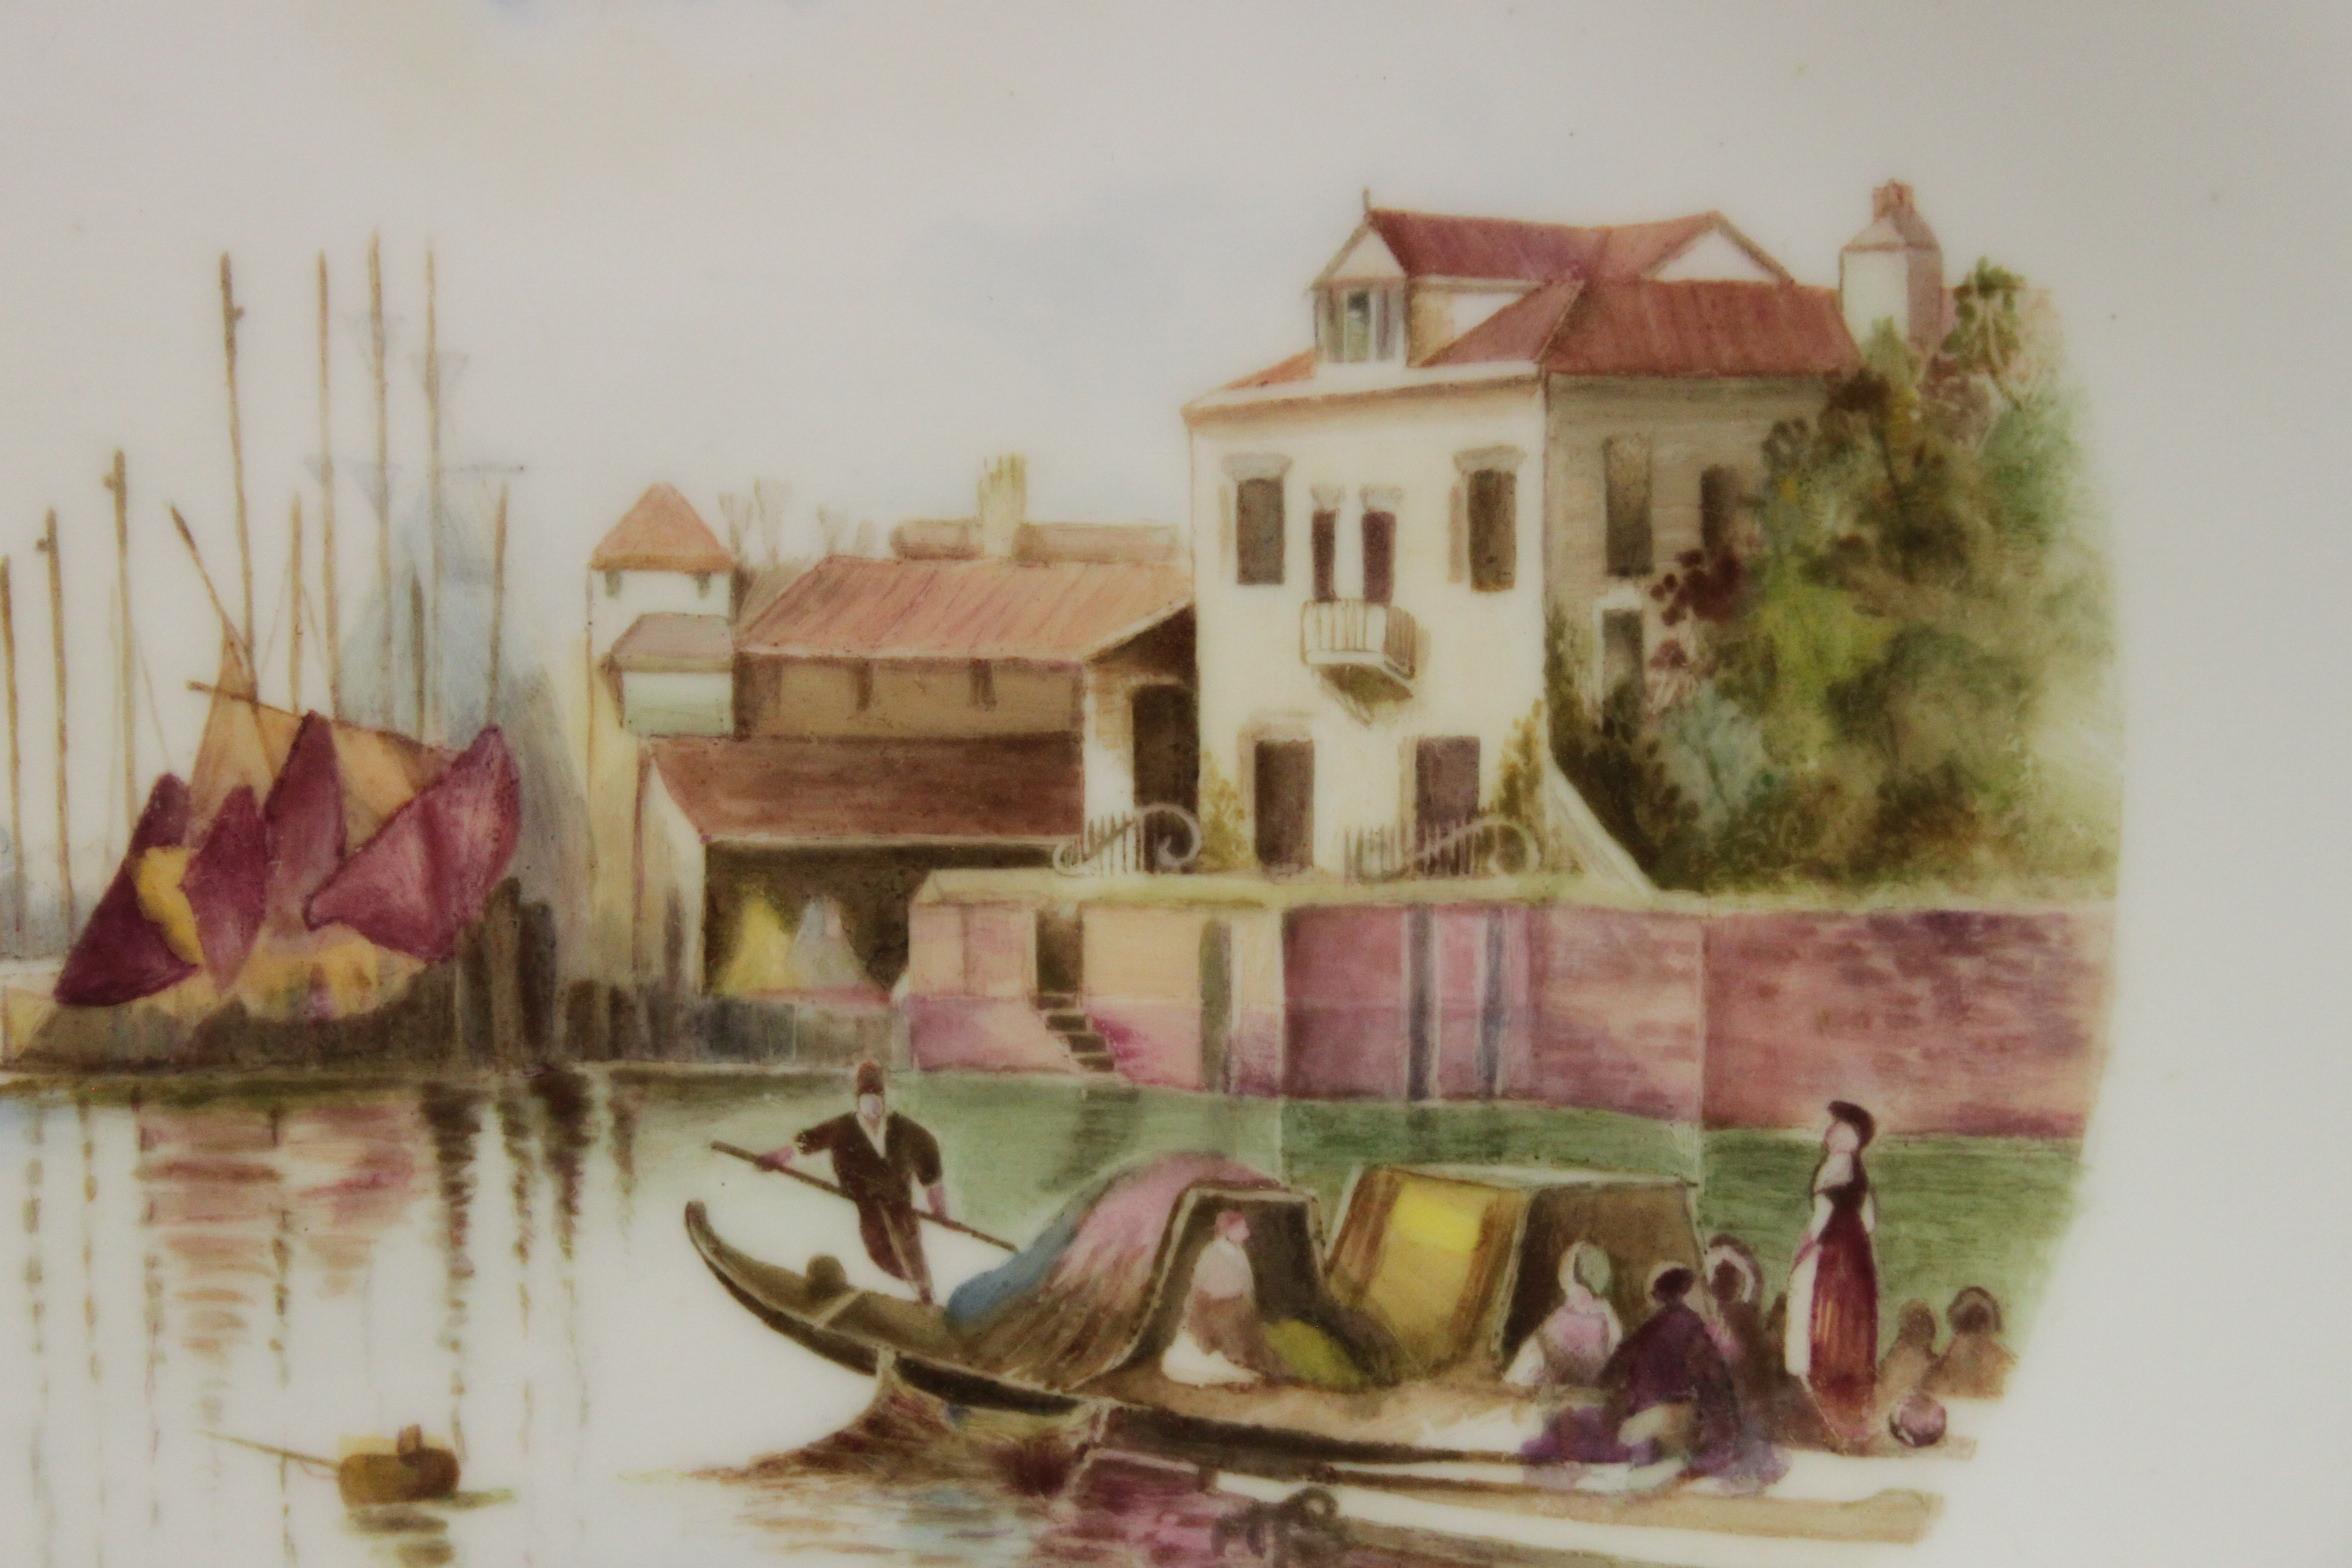 Cette assiette Royal Worcester est décorée d'une très belle scène de Venise peinte à la main par Raymond Rushton (1886-1956). La scène impressionniste représente des gondoles et de petits voiliers dans un petit port tranquille de Venise, avec des